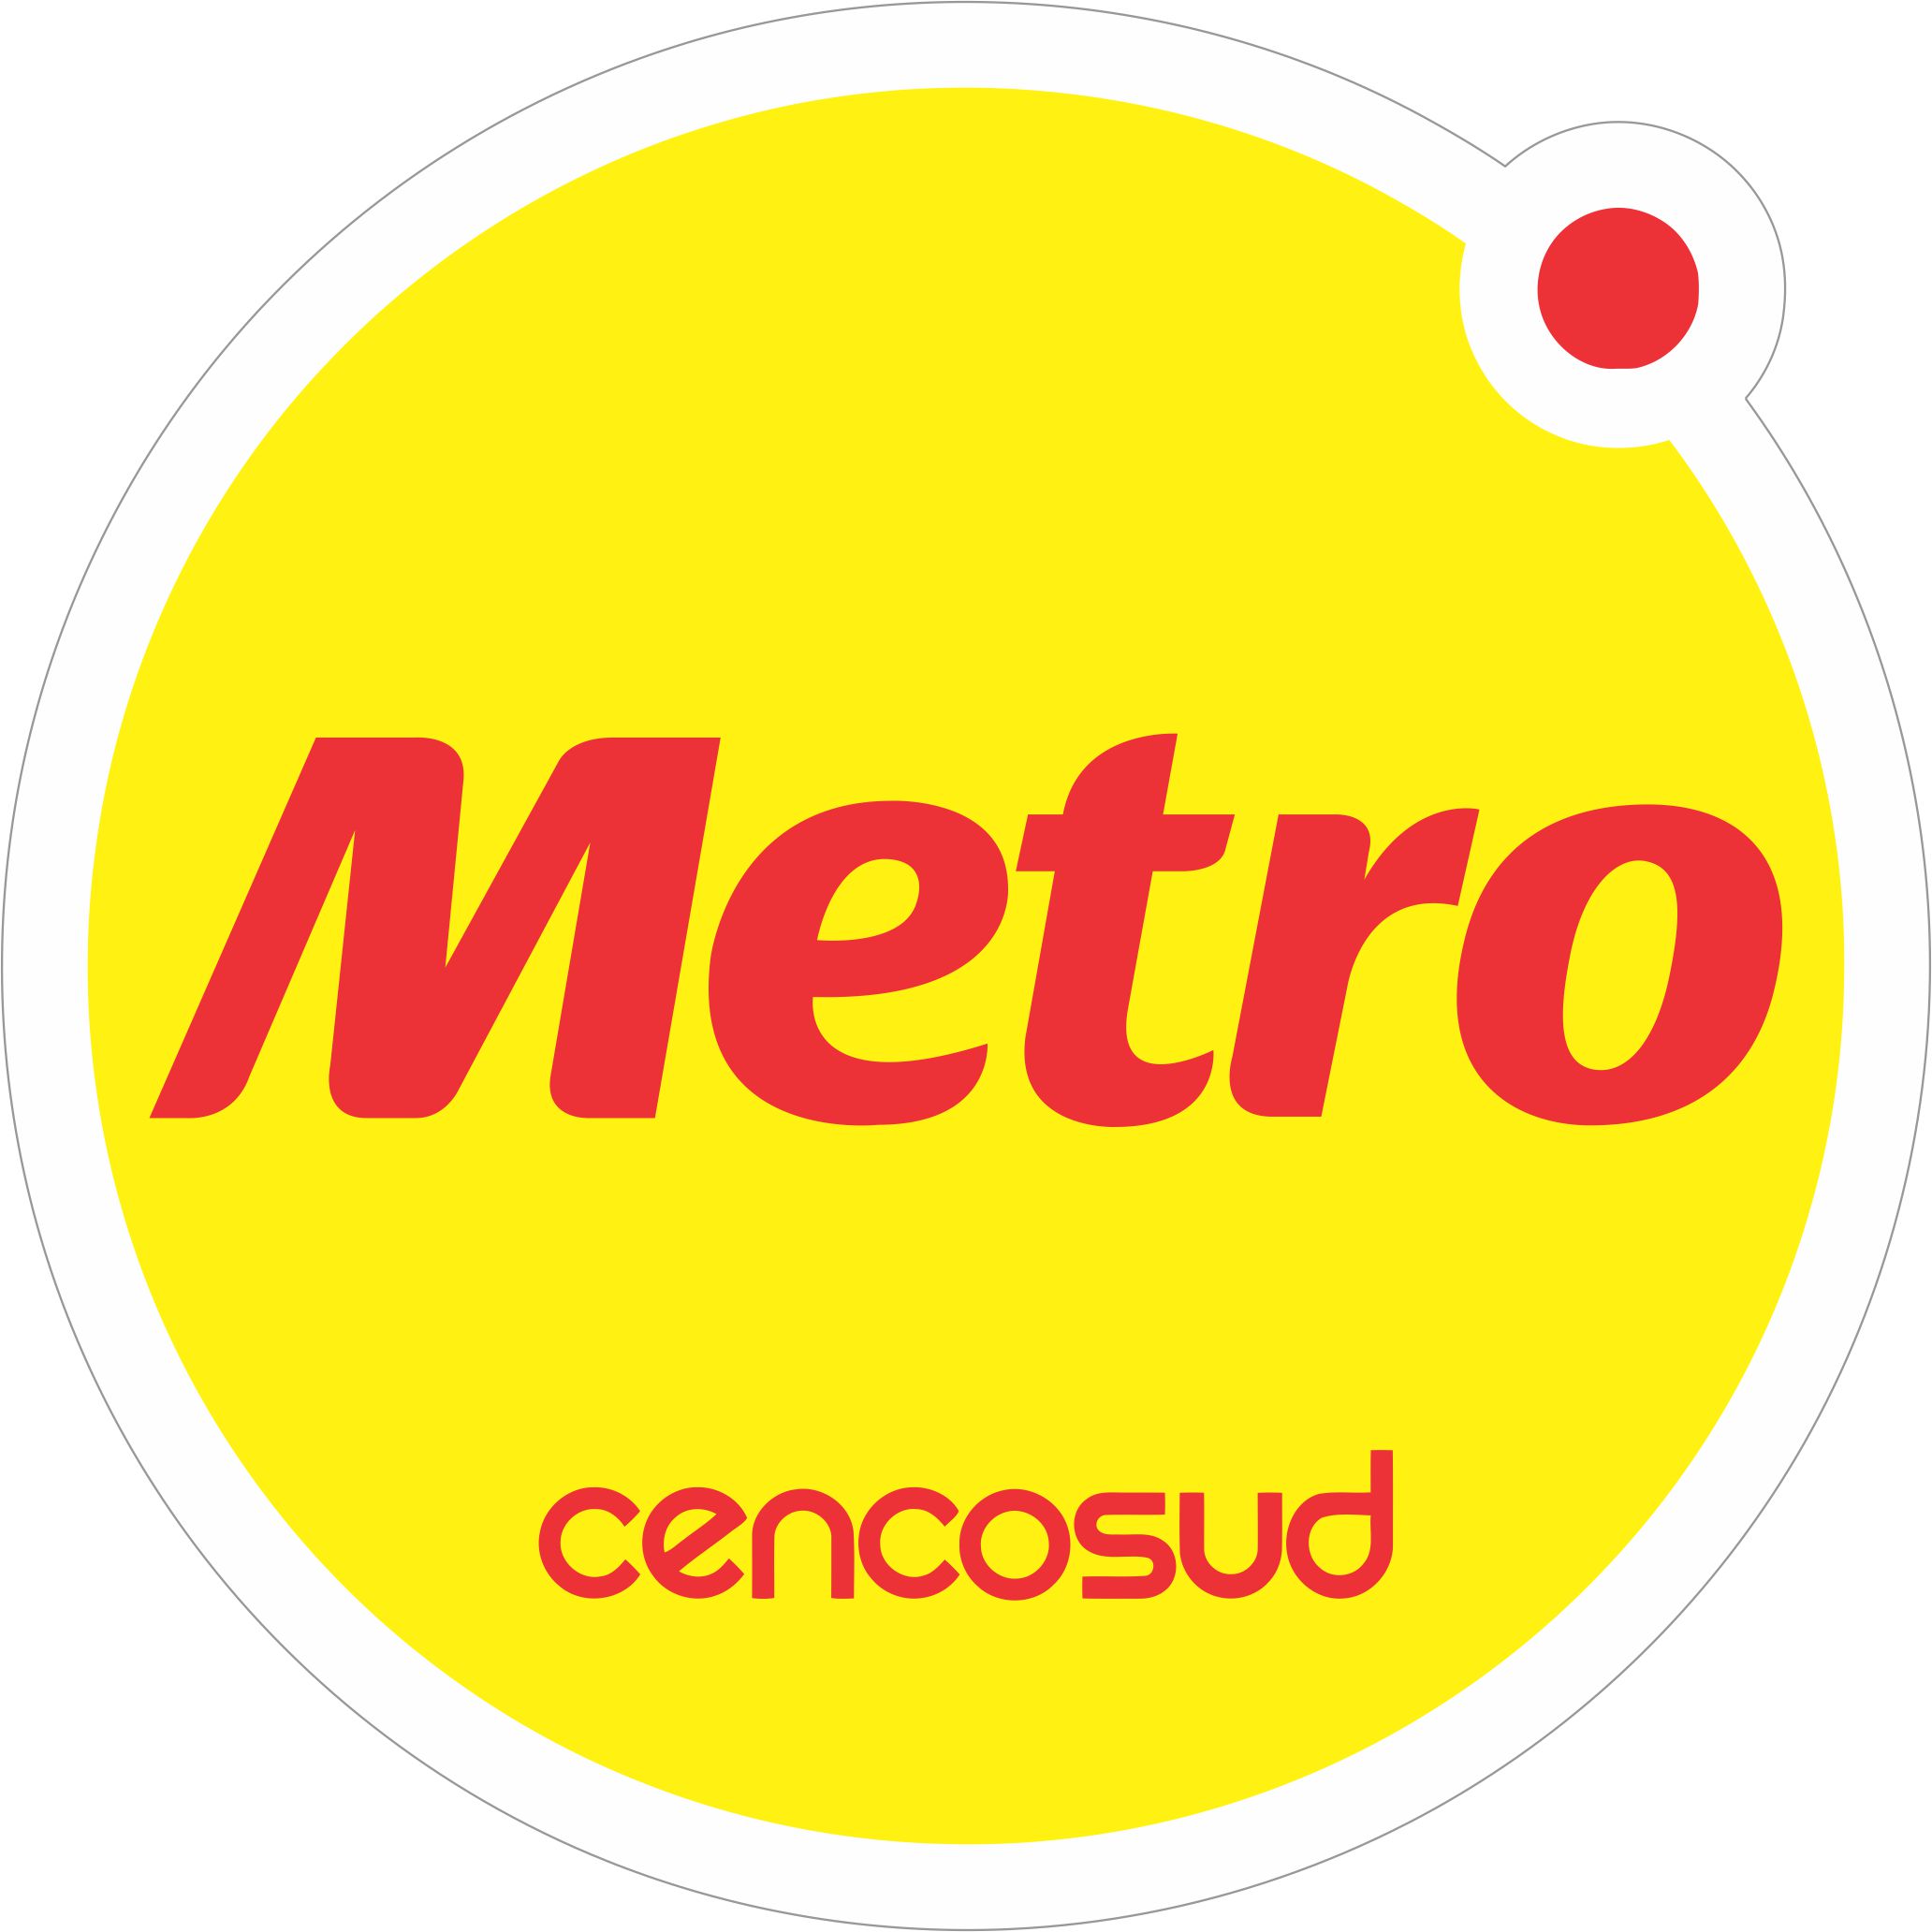 Descargar Logo Vectorizado Metro cencosud  Gratis